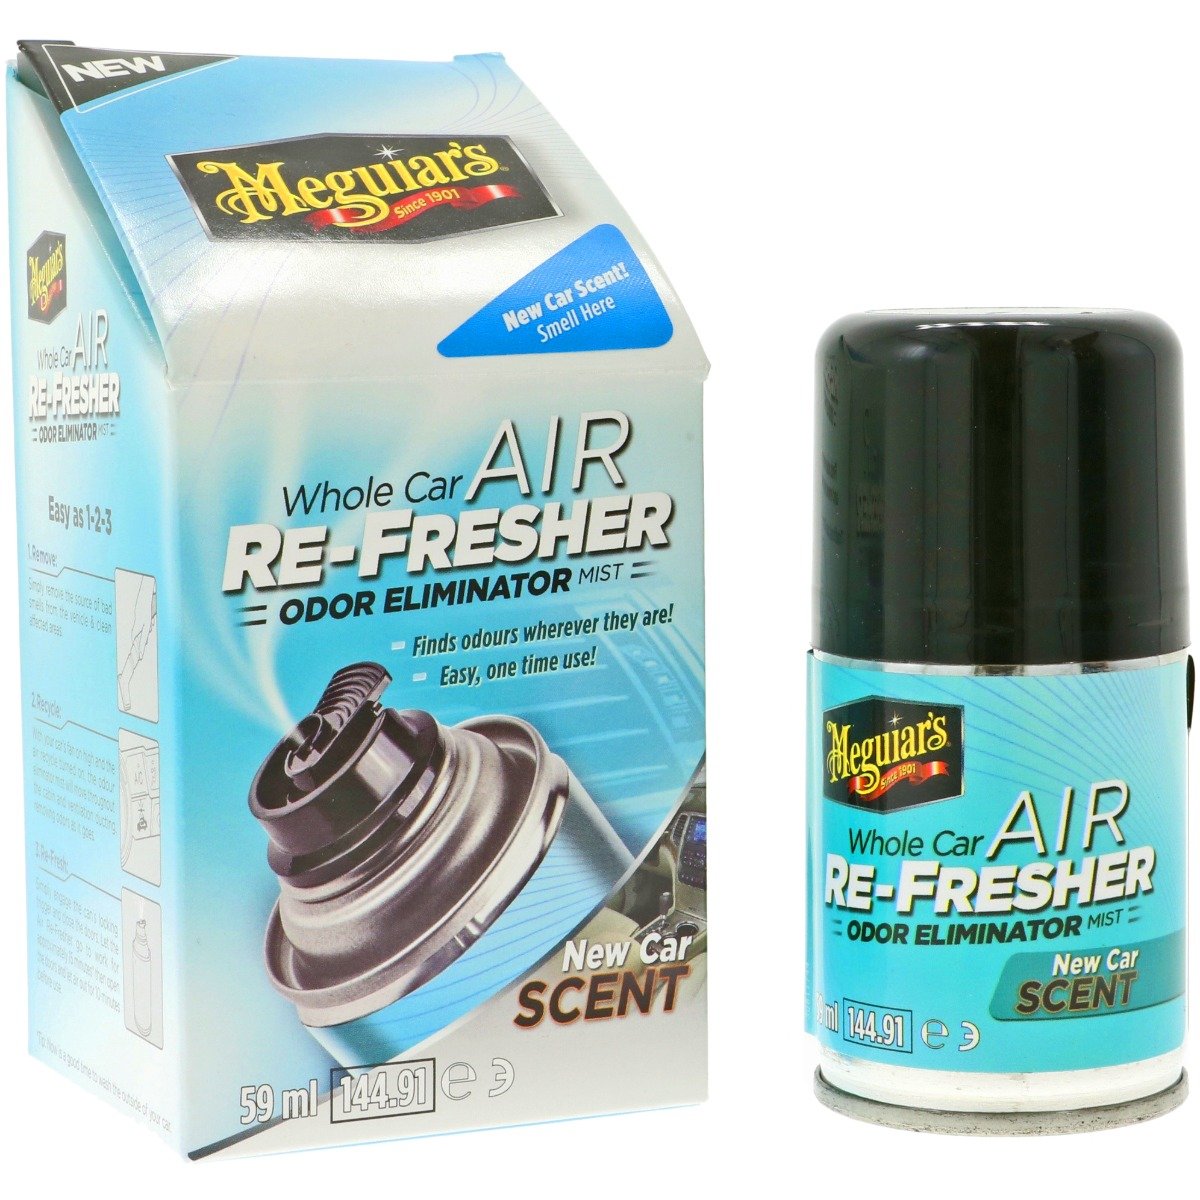 Air Refreshner New Car Scent - 59ml